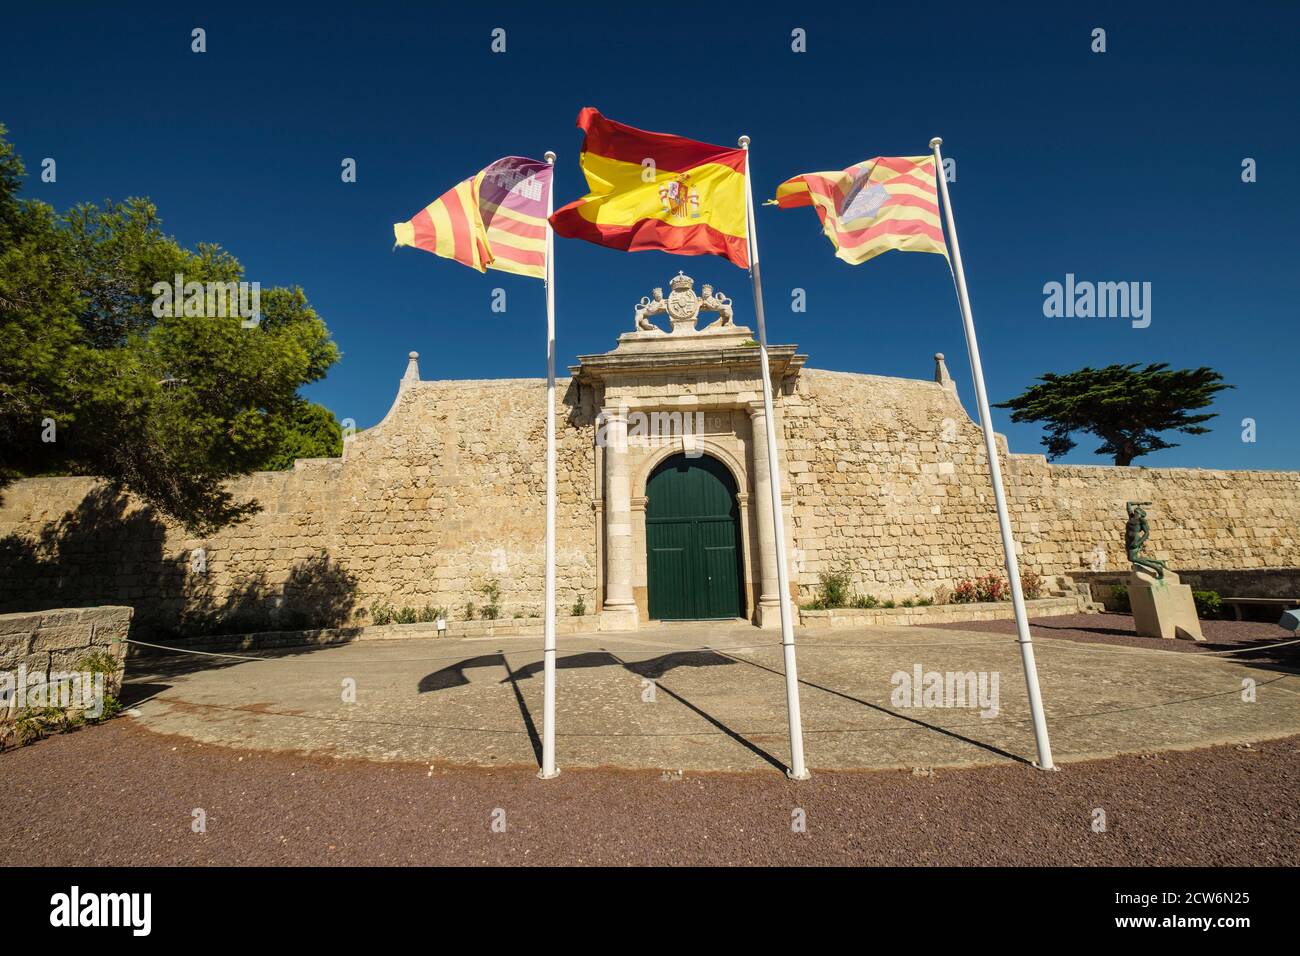 Puerta de los Leones, Entrada Principal de la isla del Lazareto, antiguo hospital militar, Illa del Llatzeret, interior del puerto de Mahón, Menorca, Stock Photo